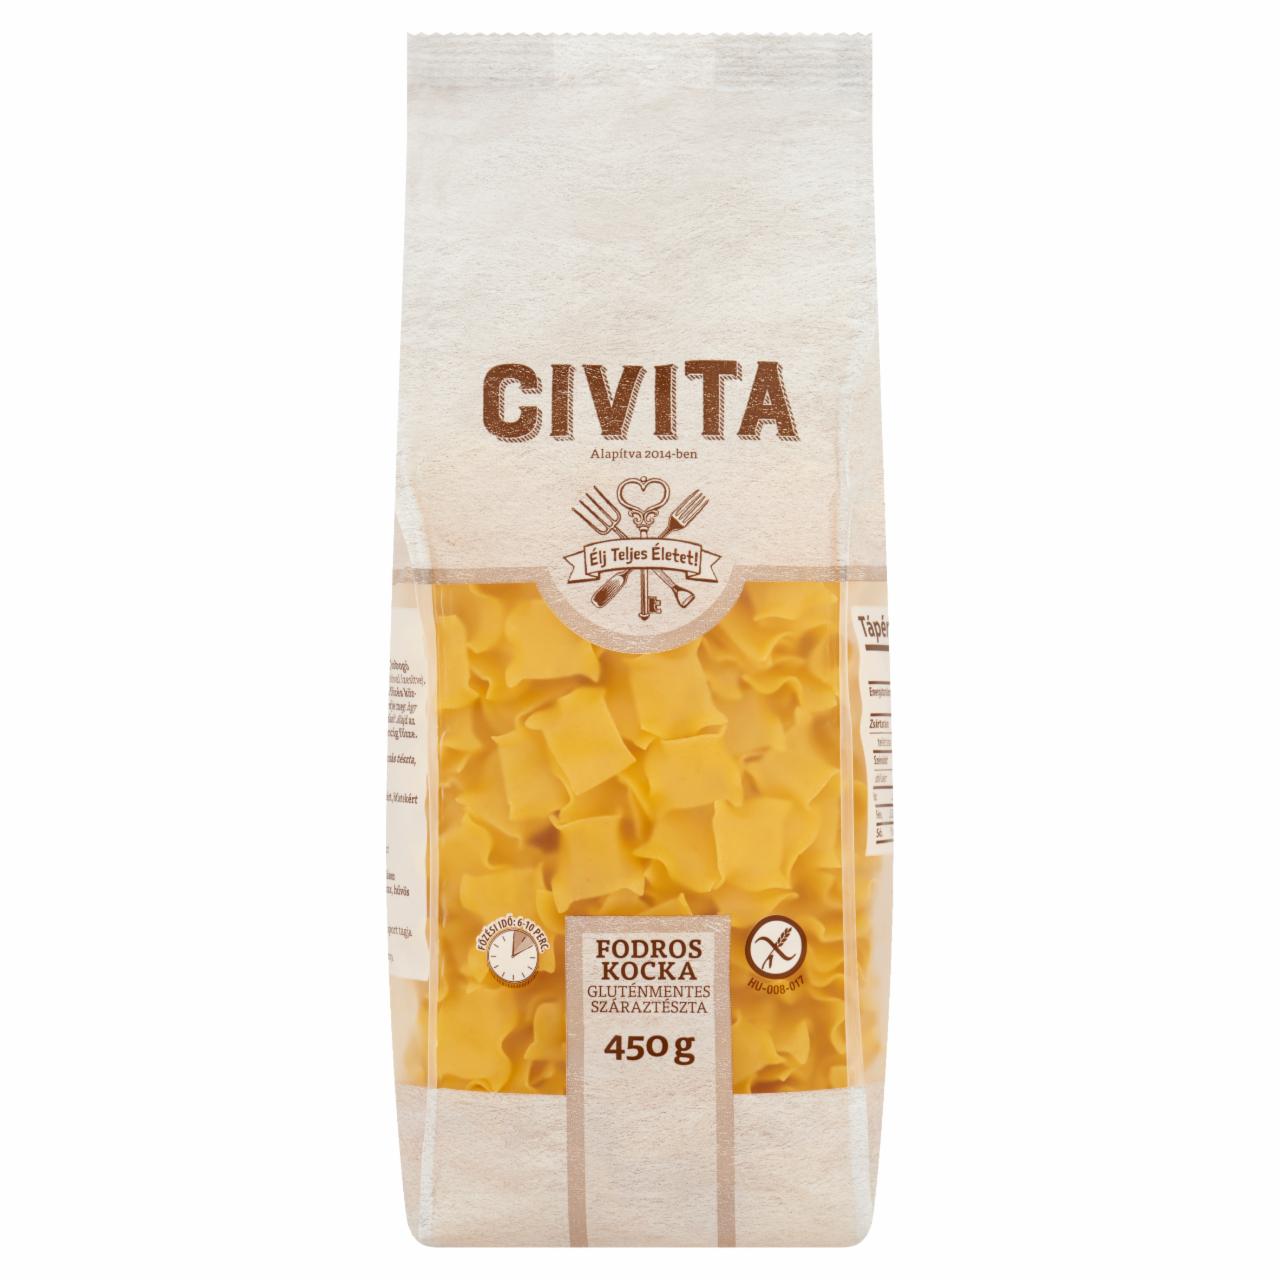 Képek - Civita fodros kocka gluténmentes száraztészta 450 g